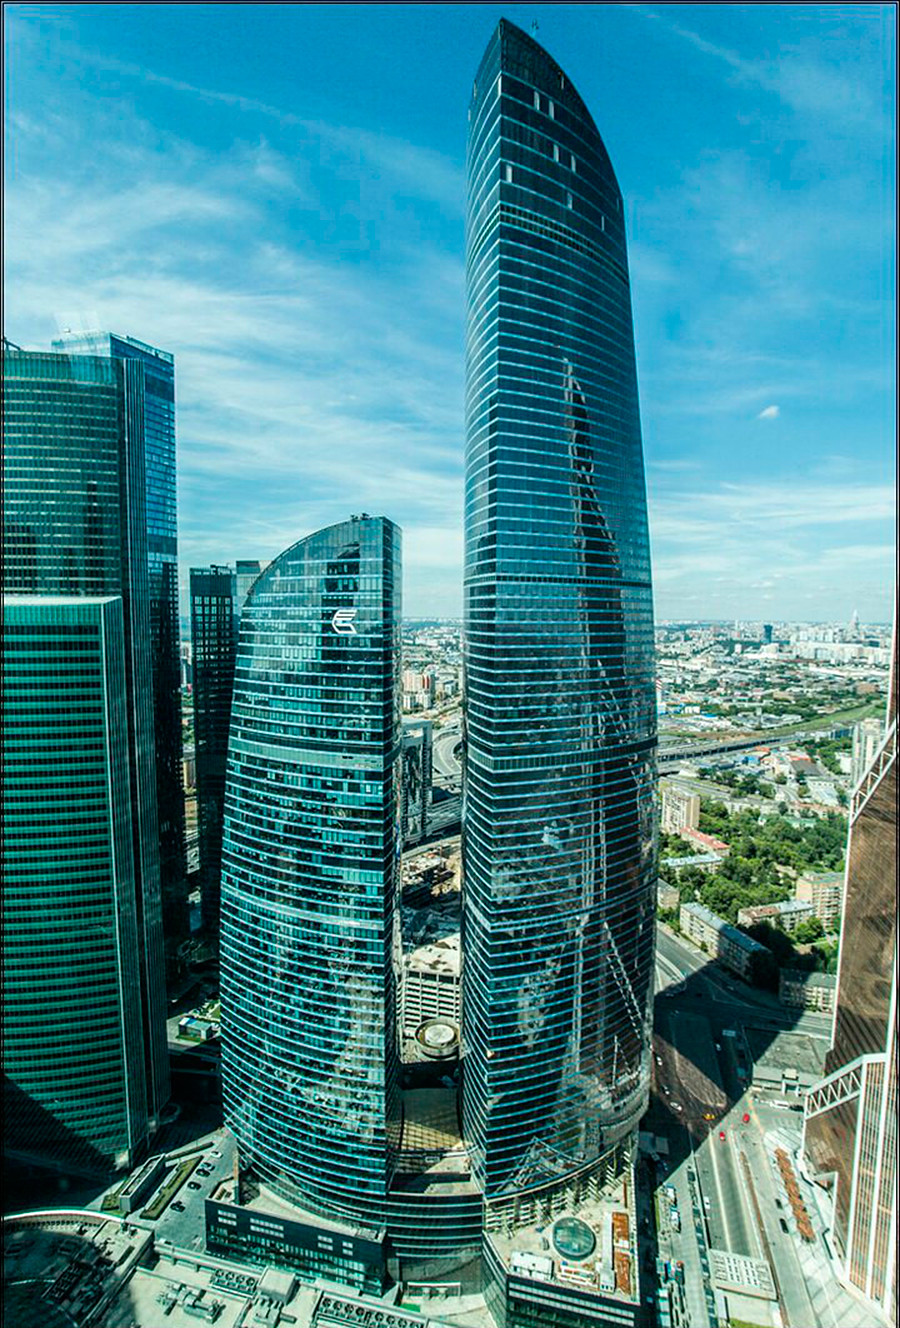 モスクワ シティ ロシアの首都にあるビジネスセンターにある驚愕の事実7つ ロシア ビヨンド